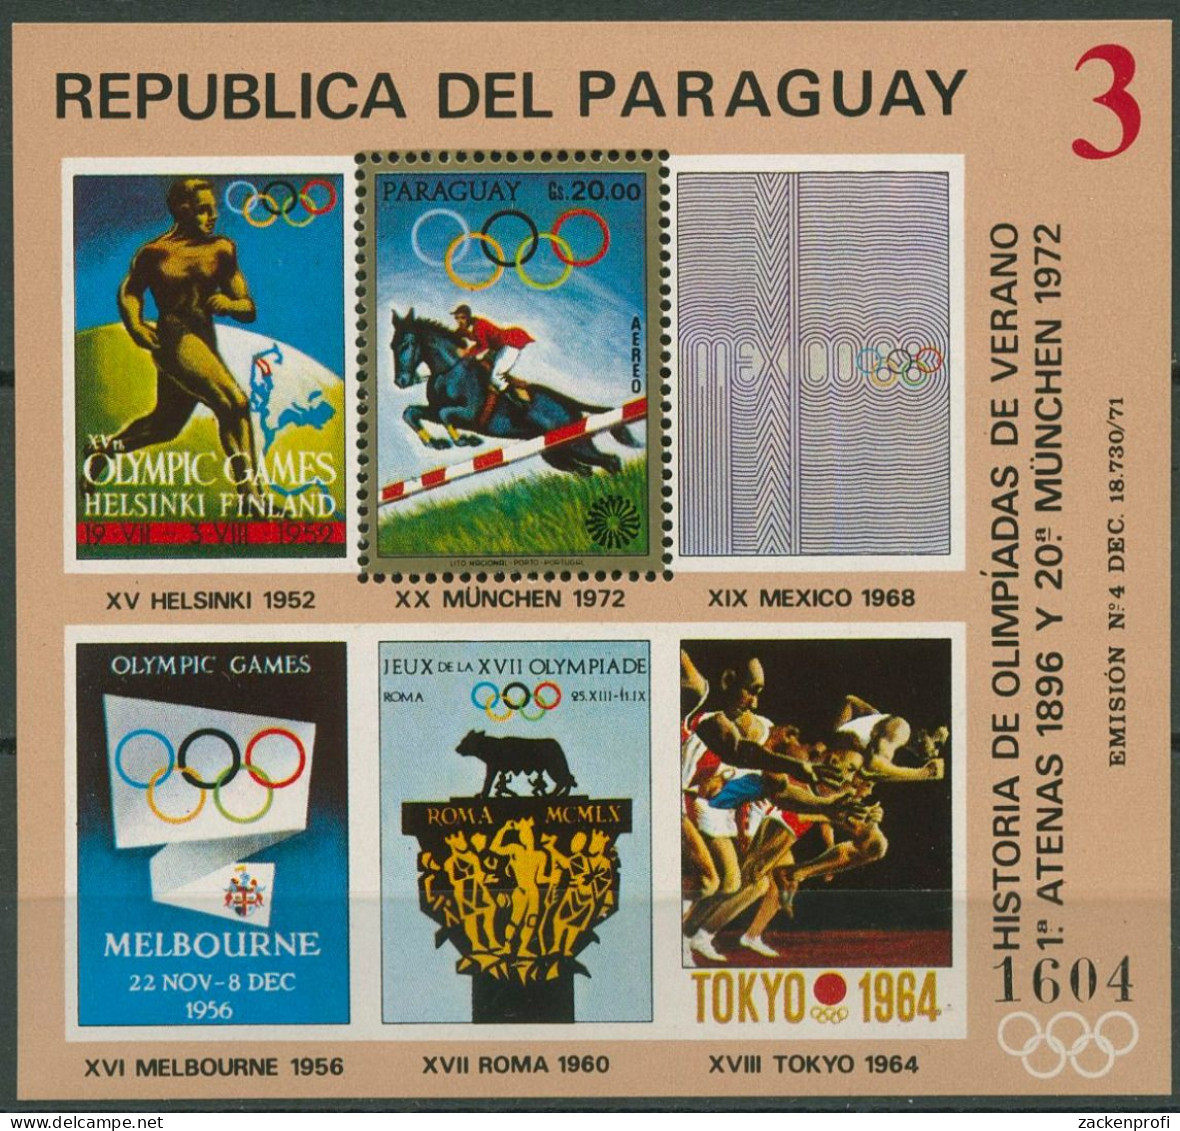 Paraguay 1972 Olympische Sommerspiele München Block 187 Postfrisch (C80525) - Paraguay